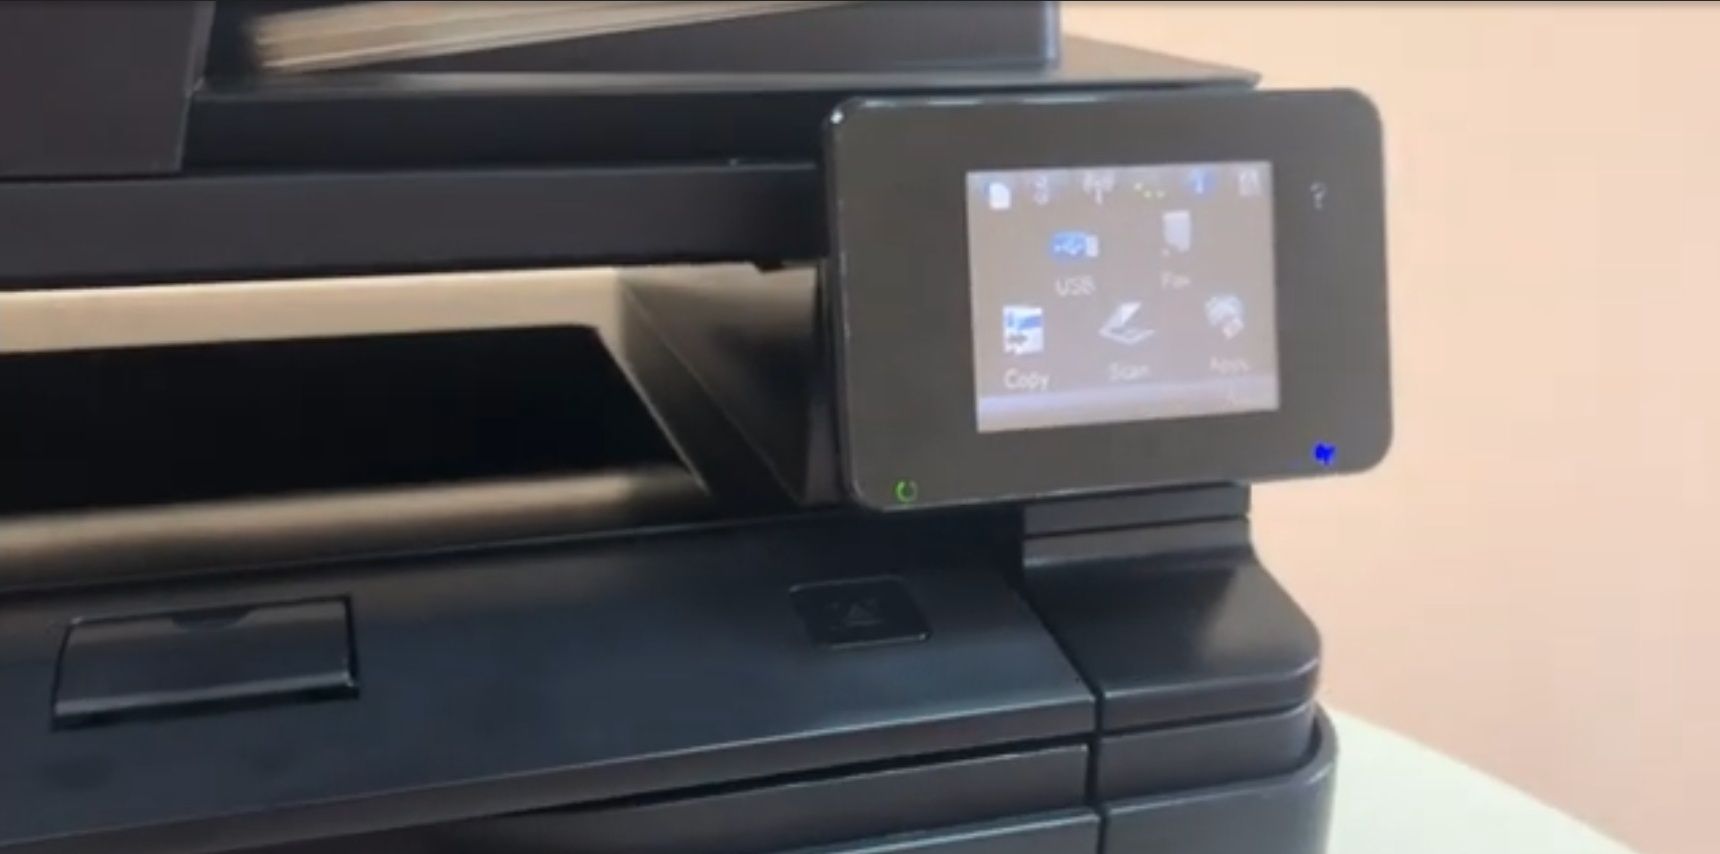 Продам МФУ(принтер,сканер,копир,факс) LaserJet Pro 400 M425dn